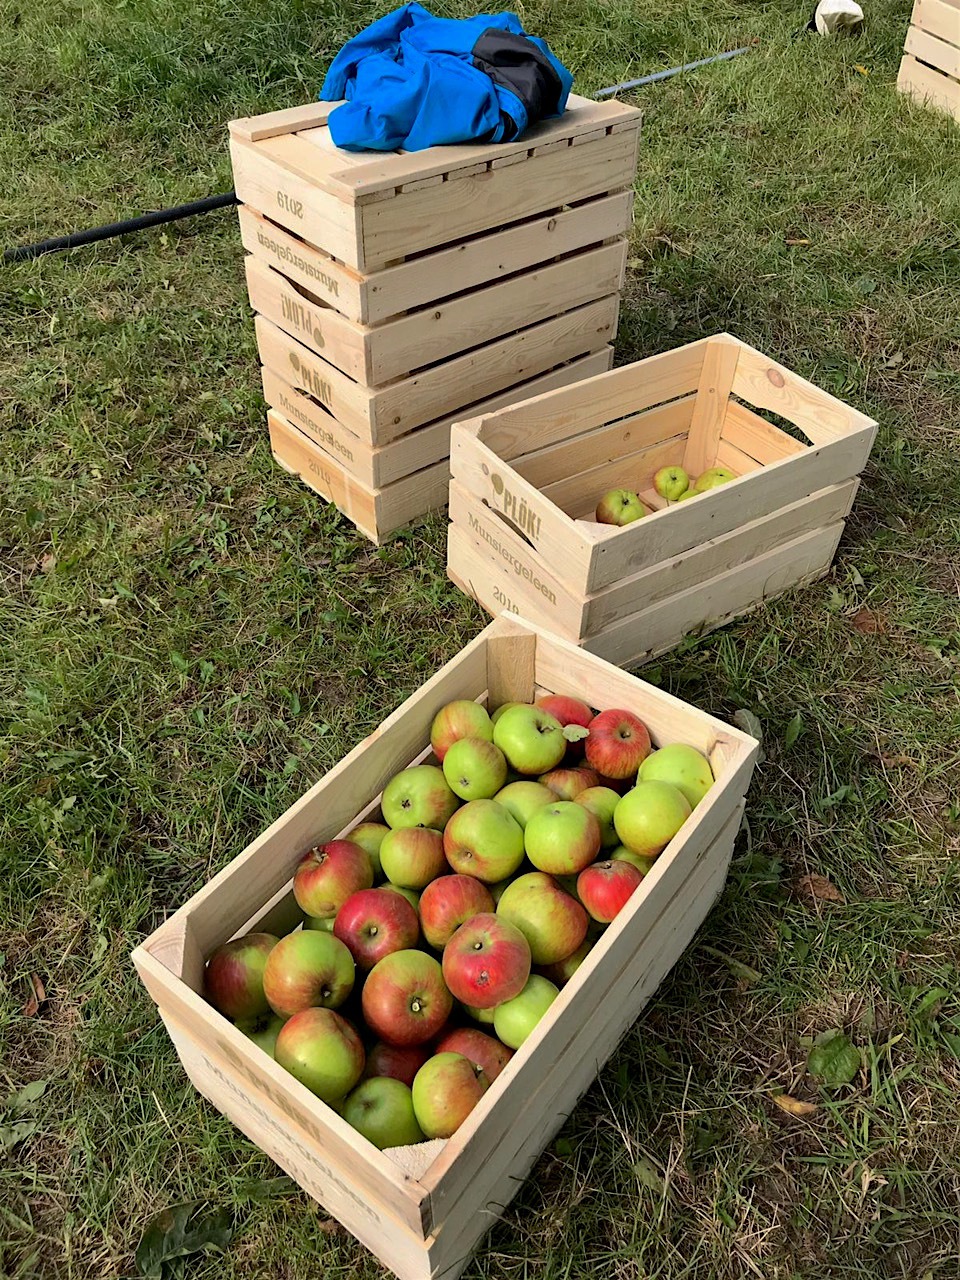 oogst-appelen-Lintjesweg-Munstergeleen-2019-002